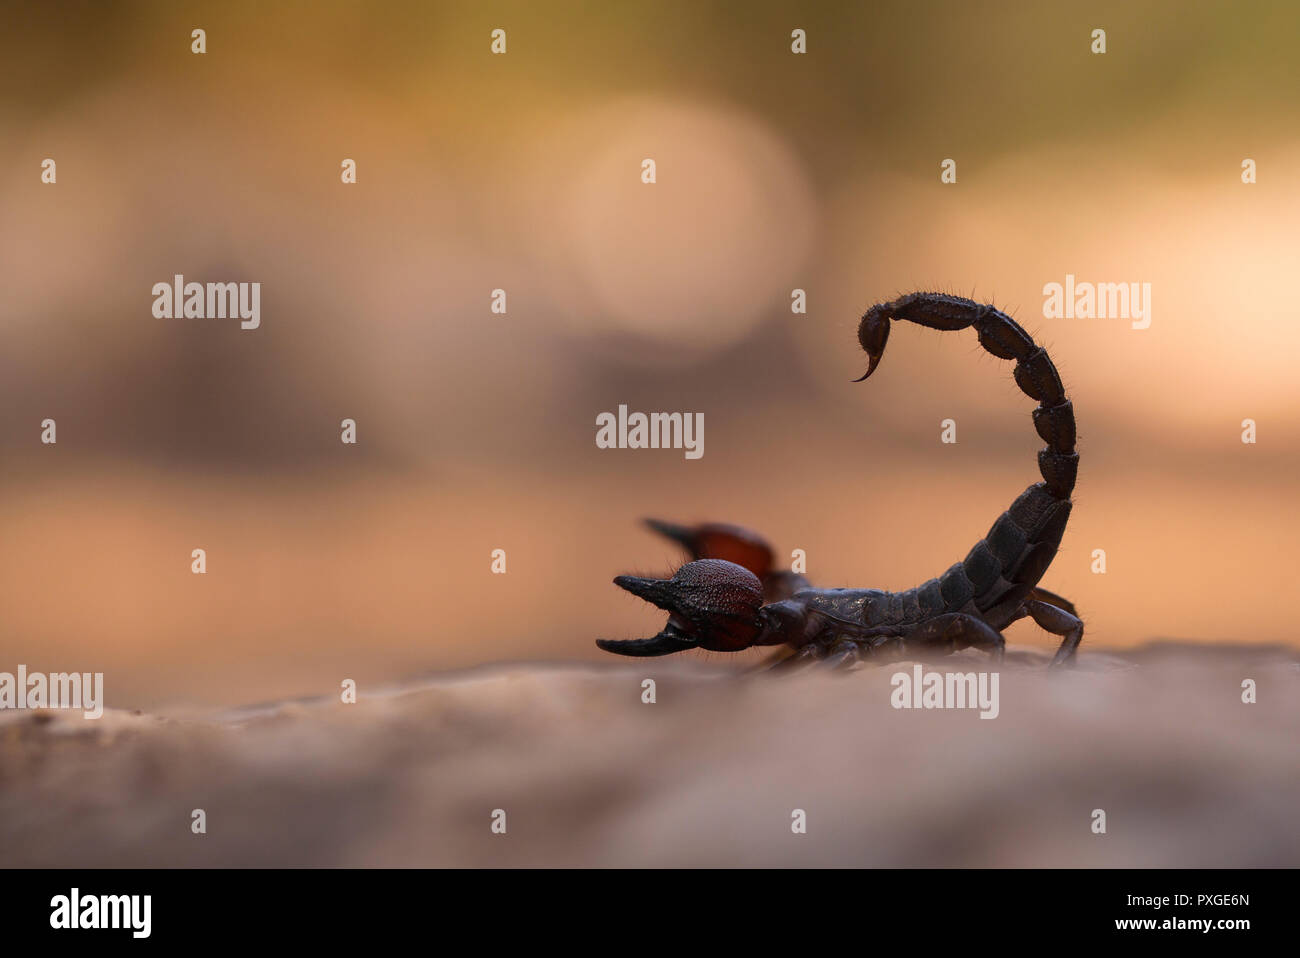 Scorpion noir israélien (Scorpio maurus fuscus) AKA Scorpion d'or israélien sur une dune de sable photographiés en Israël en août de l'été Banque D'Images